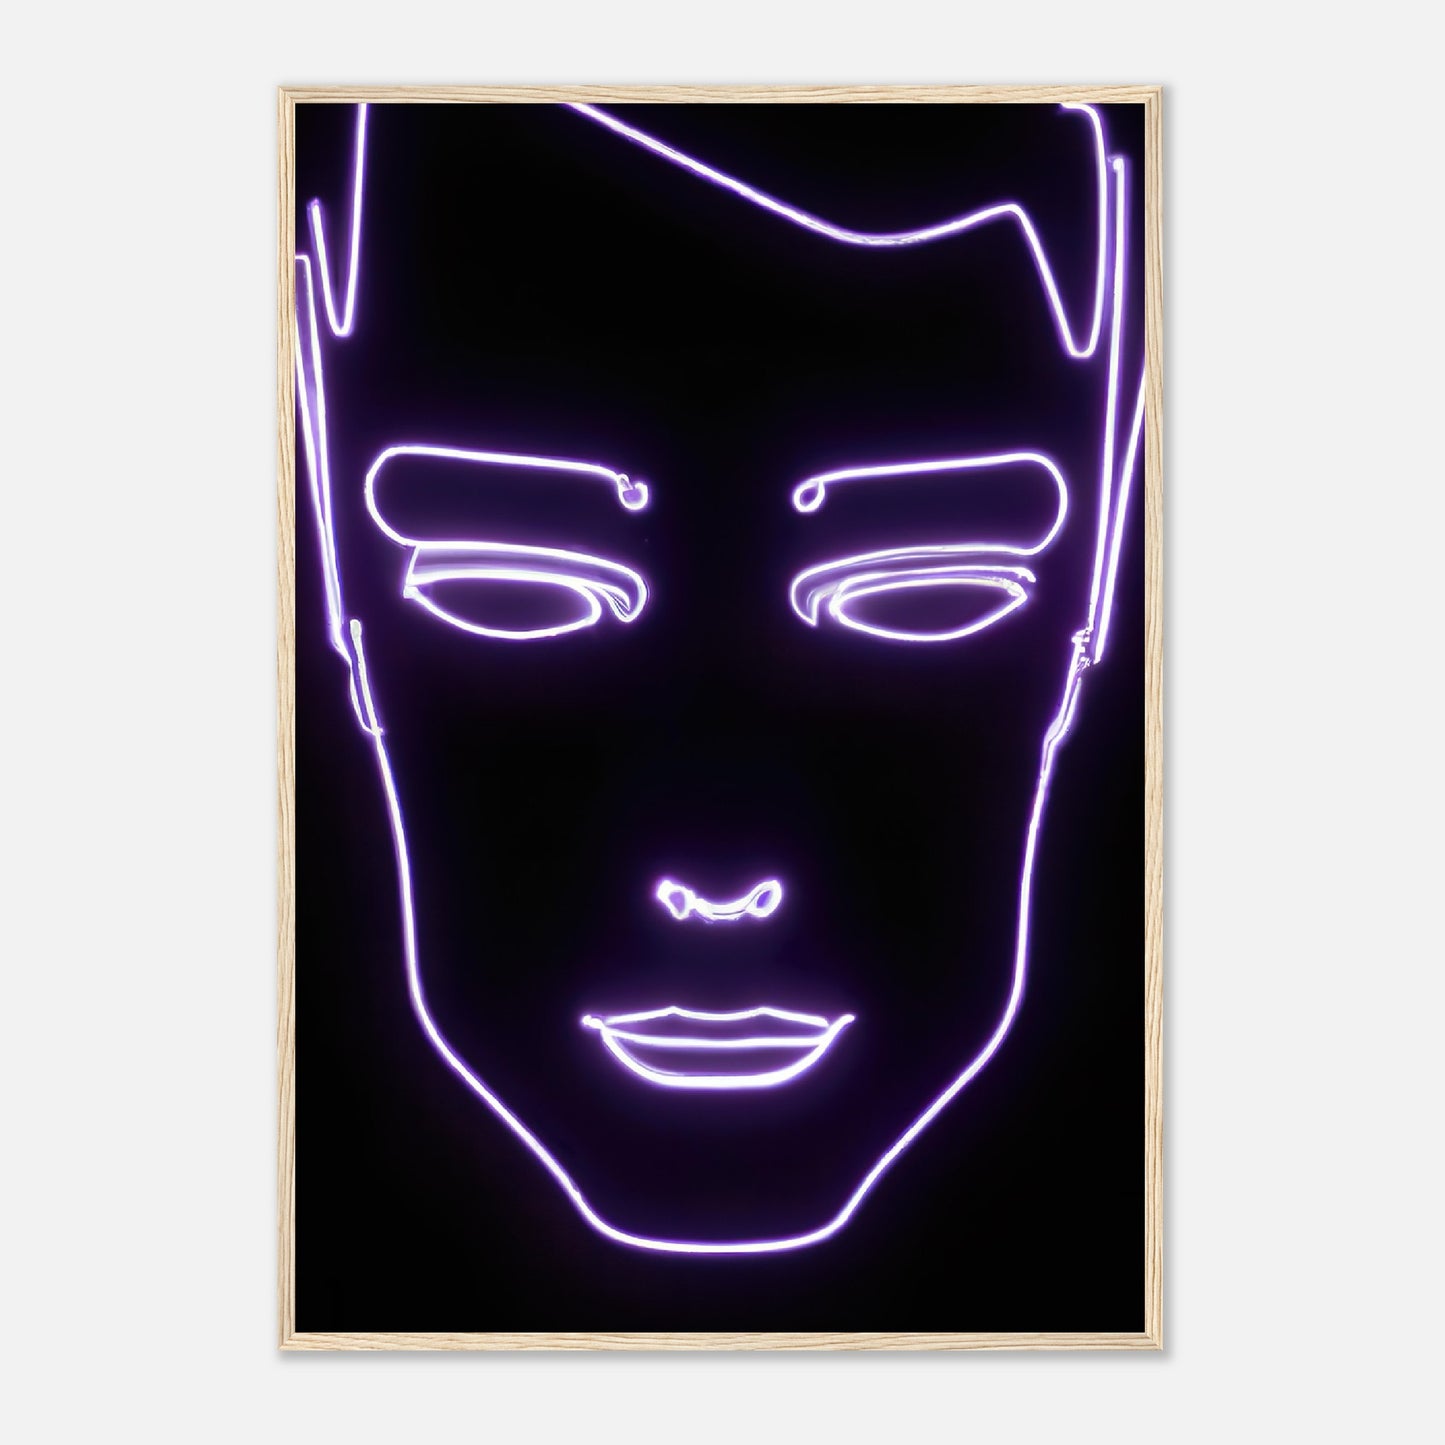 Gerahmtes Premium-Poster - Männliches Gesicht - Neon Stil, KI-Kunst - RolConArt, Neon, 70x100-cm-28x40-Holz